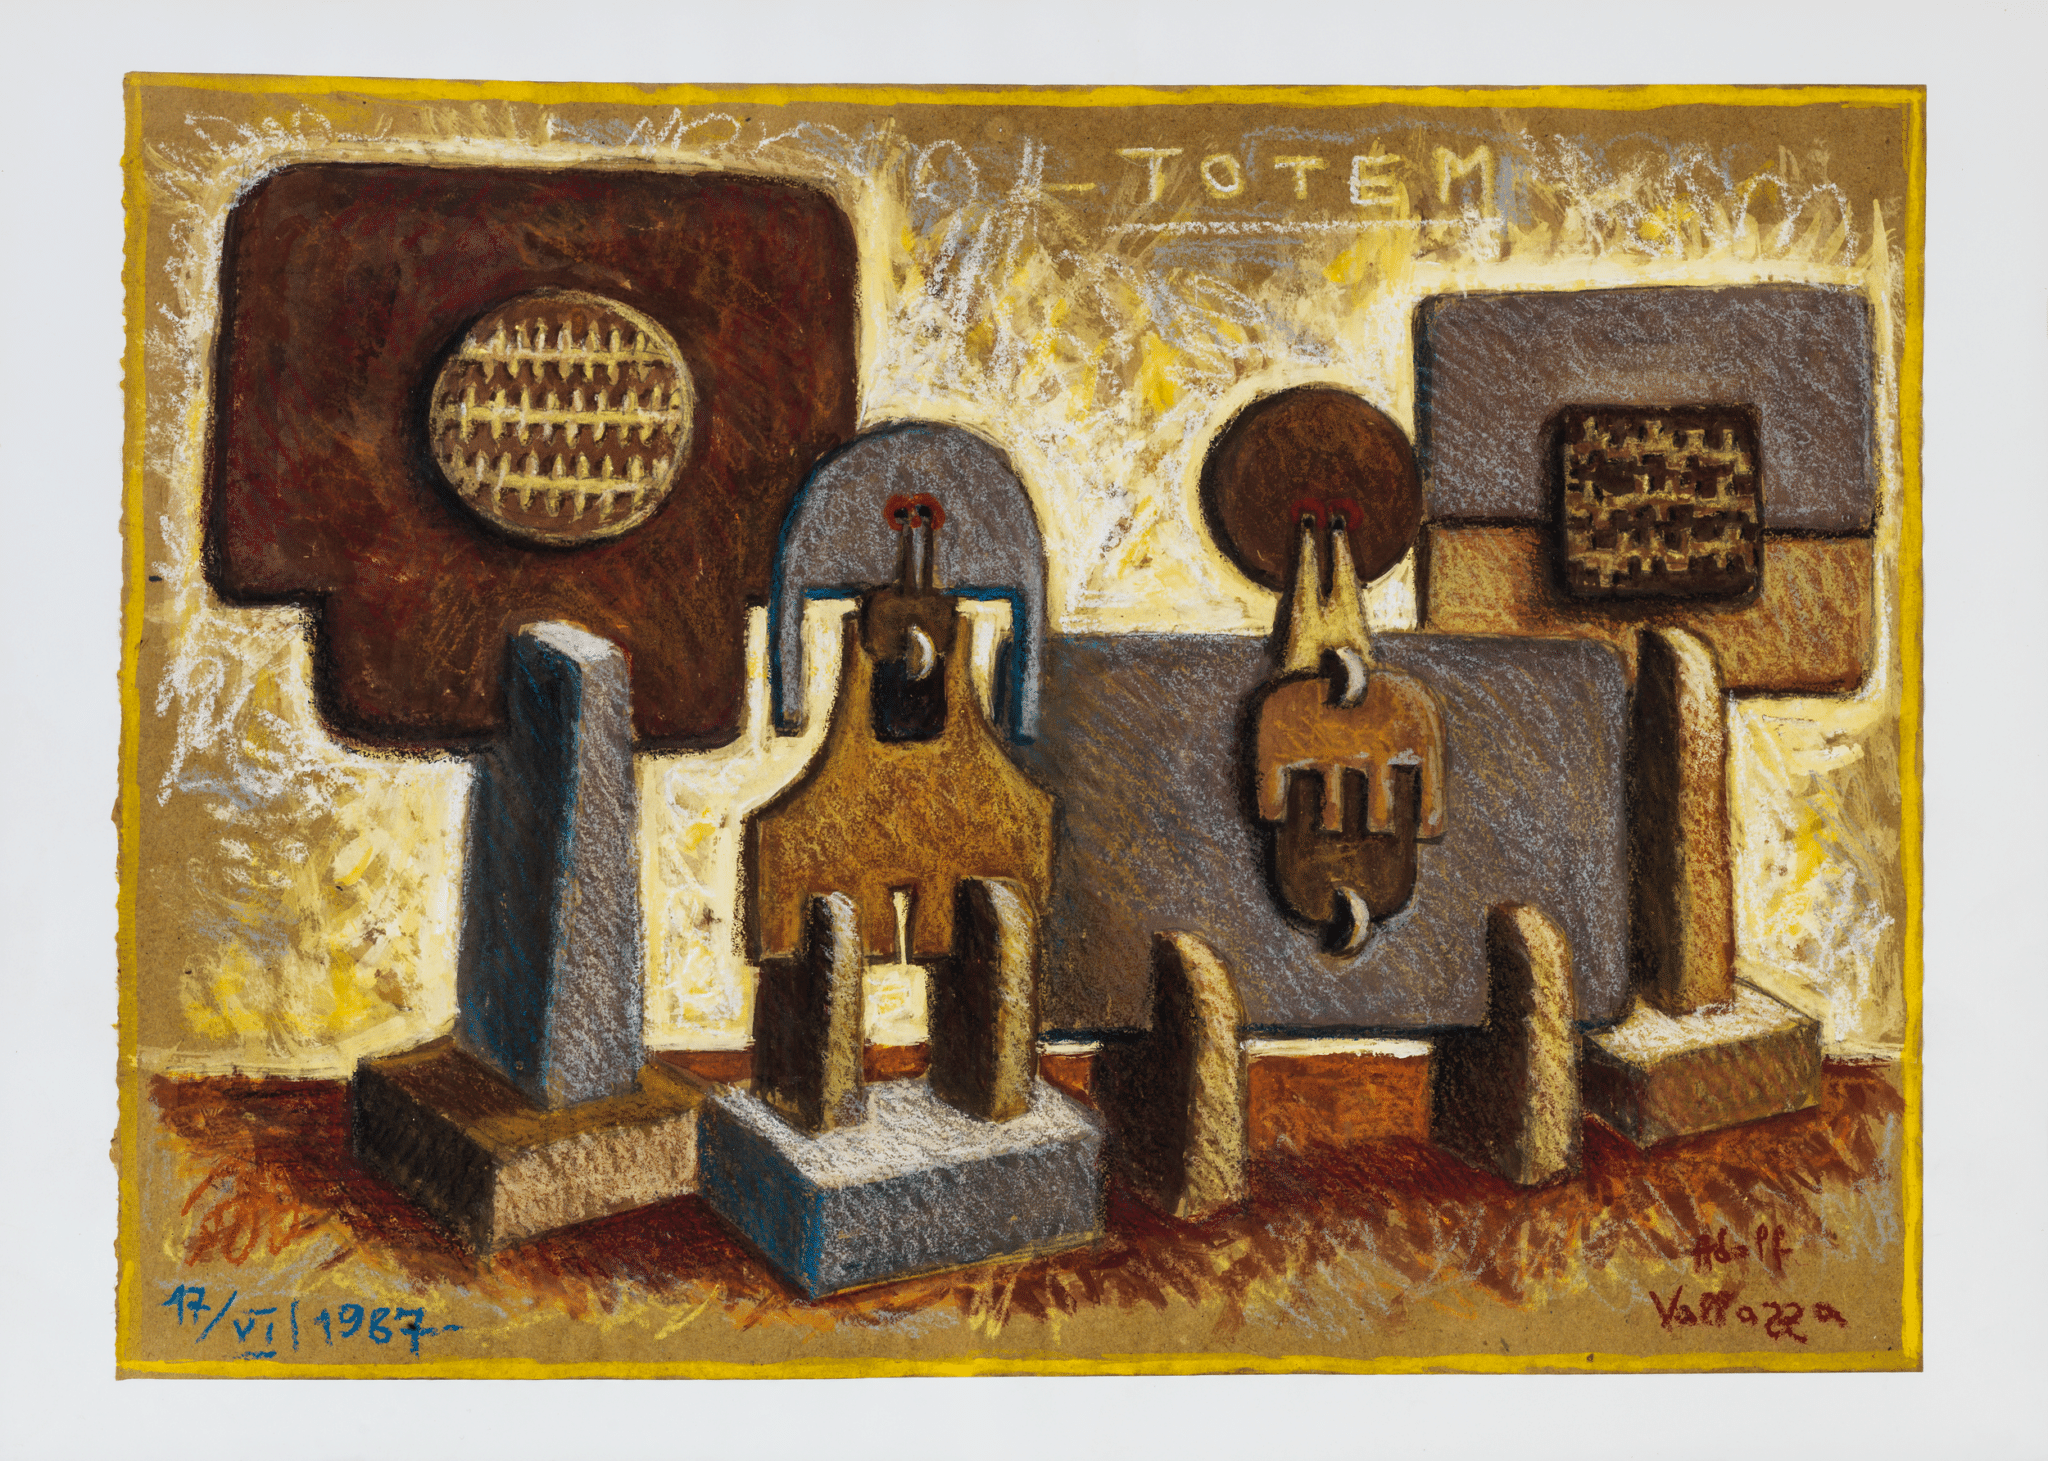 Adolf Vallazza, Totem, 1987, Mischtechnik auf Papier, 44.2 x 61 cm Sammlung Museion, Foto: Gardaphoto s.r.l., Salò